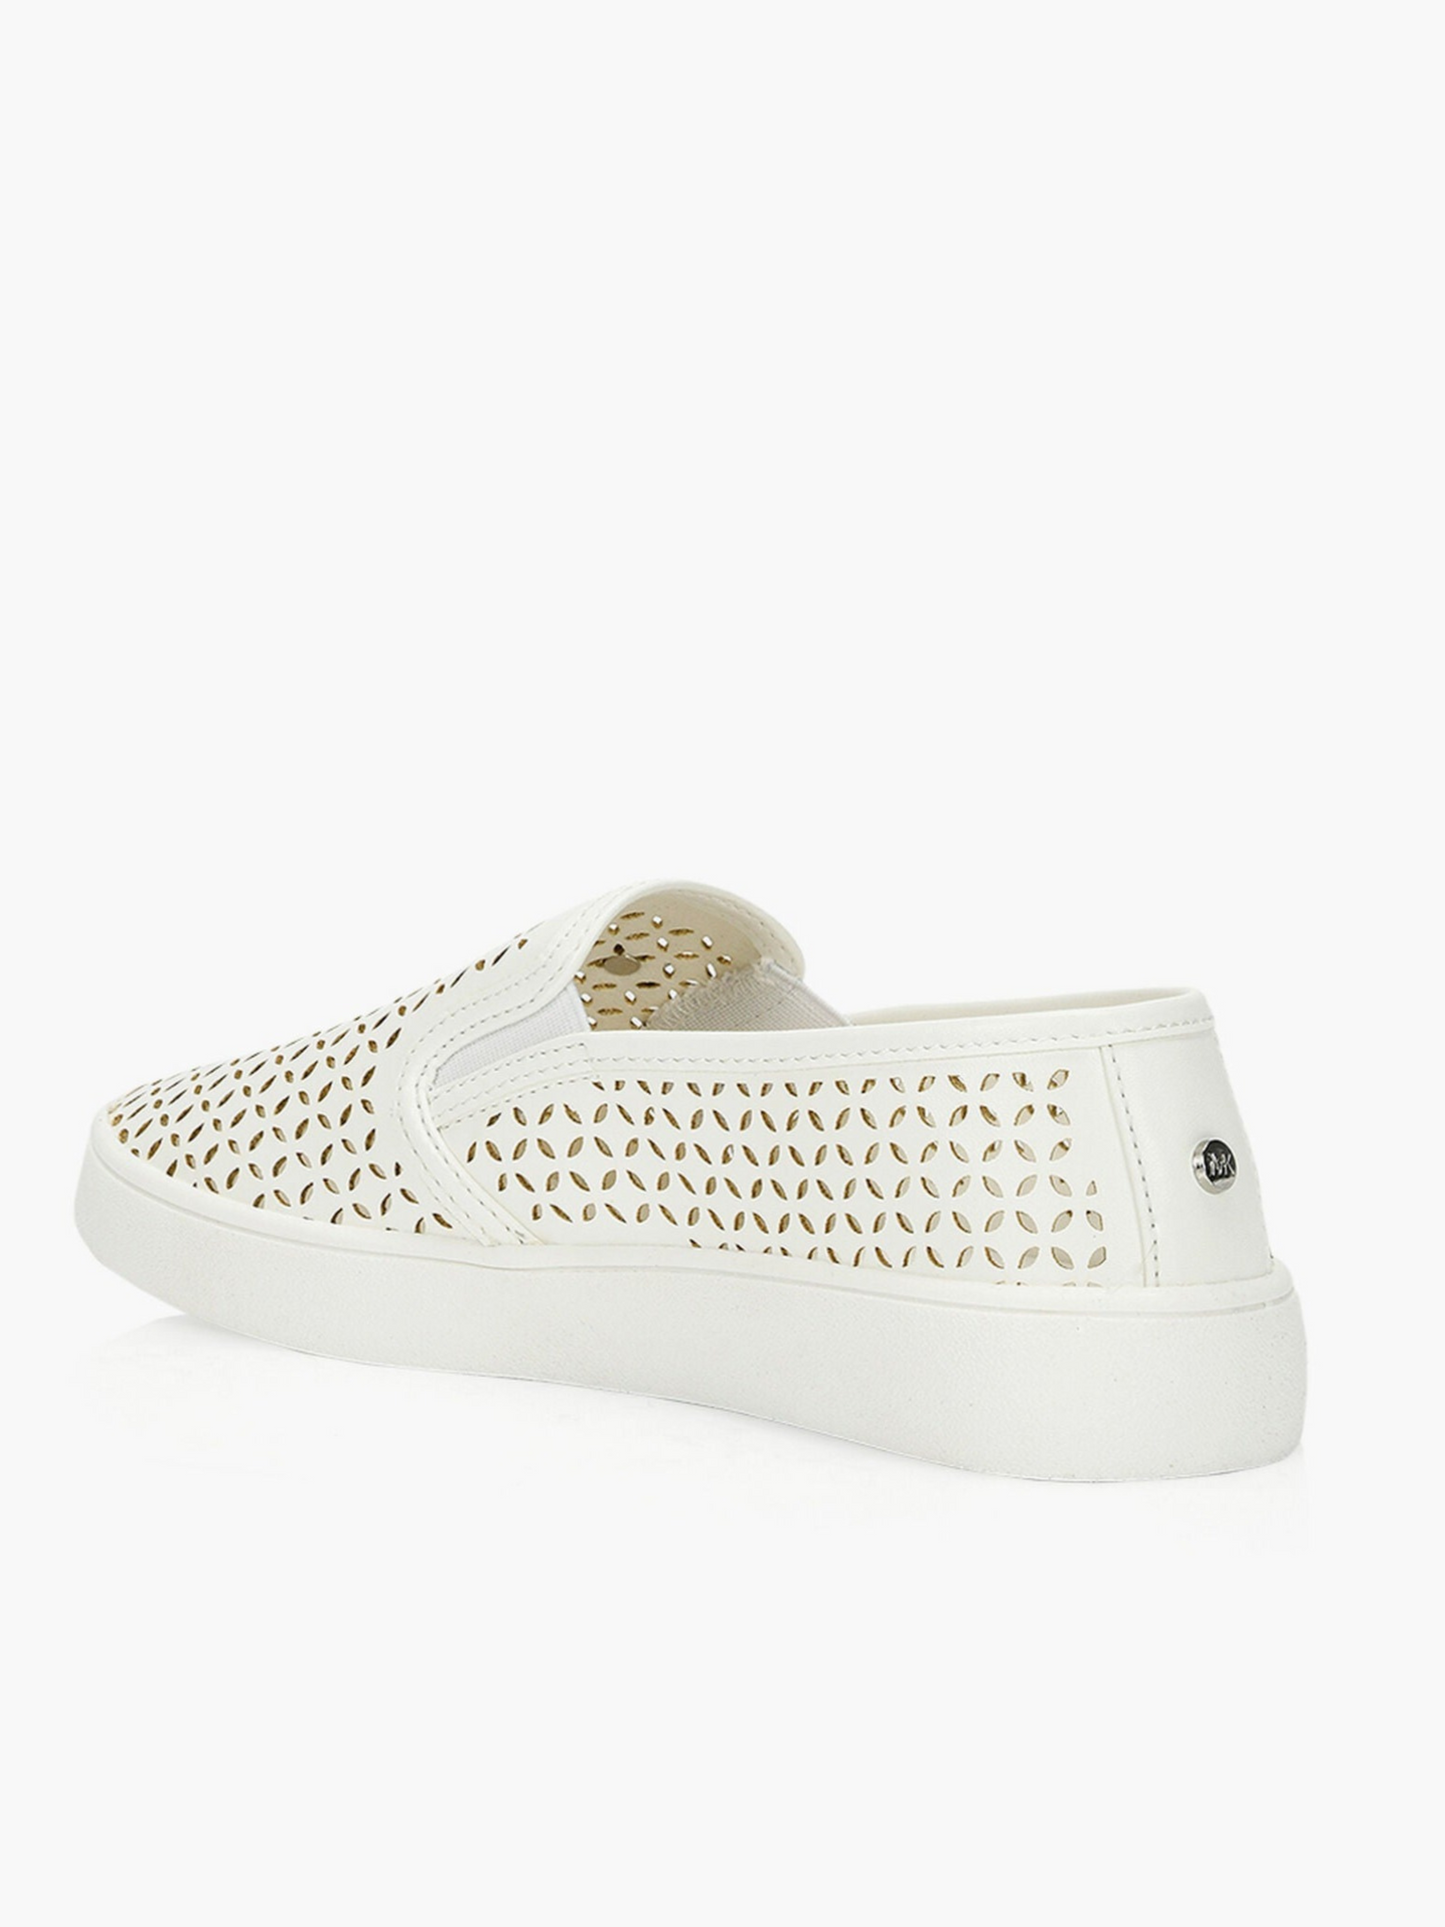 Michael Kors Slip-Ons Shoes White_MKS10424C